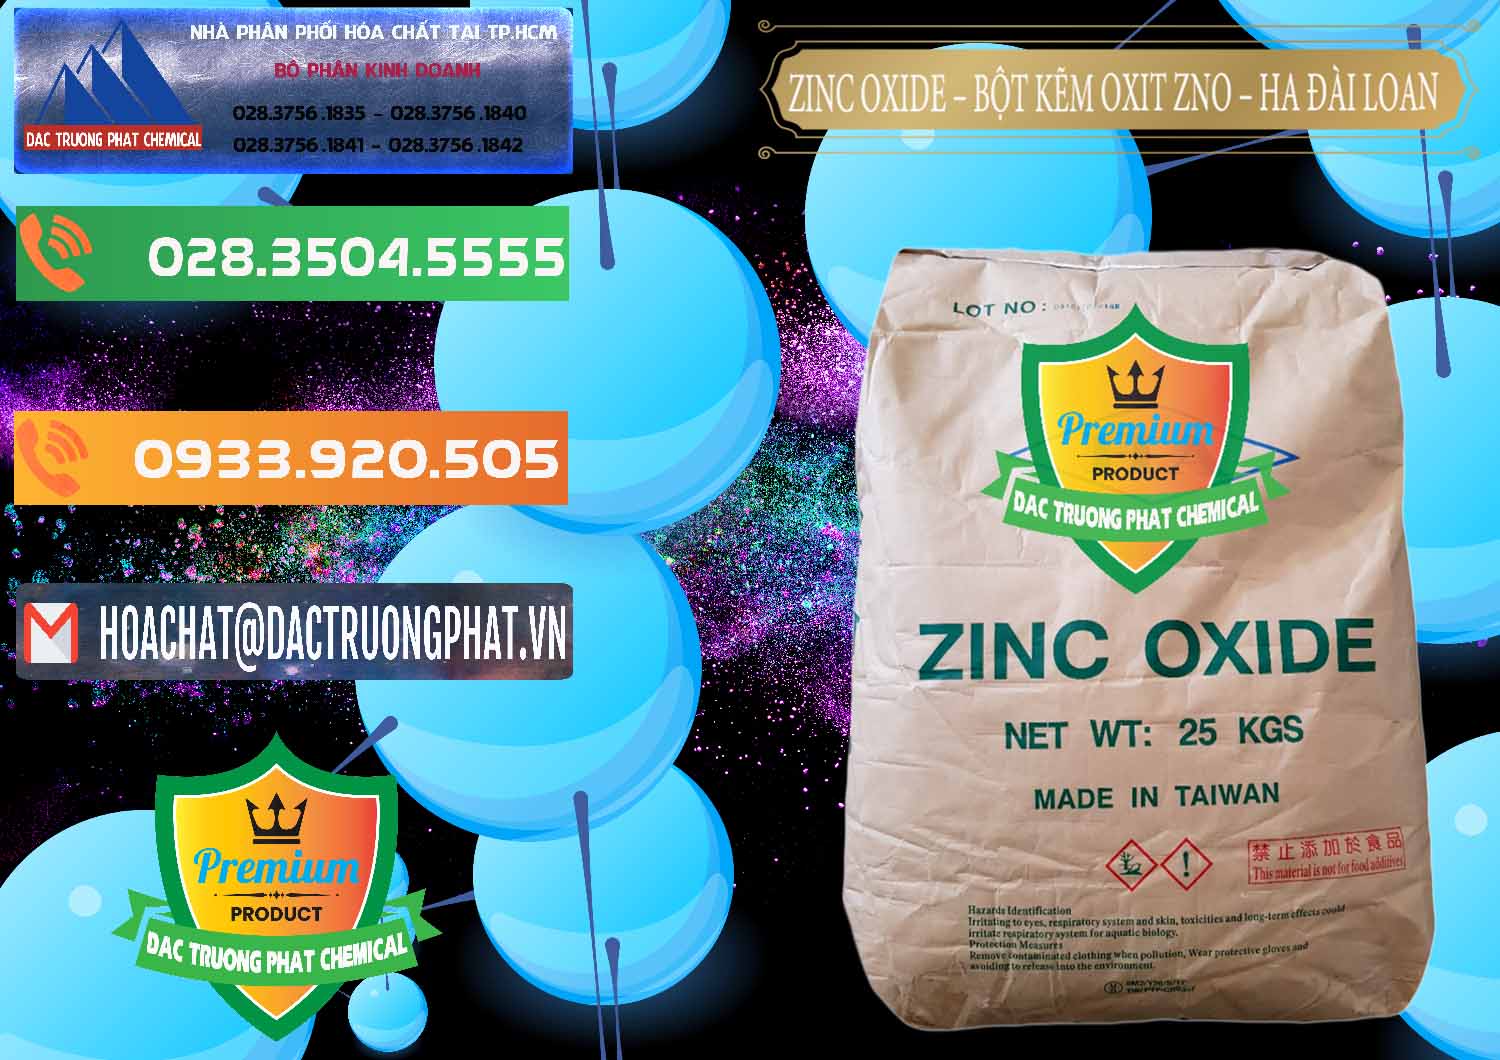 Cty bán - phân phối Zinc Oxide - Bột Kẽm Oxit ZNO HA Đài Loan Taiwan - 0180 - Cty cung cấp - kinh doanh hóa chất tại TP.HCM - hoachatxulynuoc.com.vn